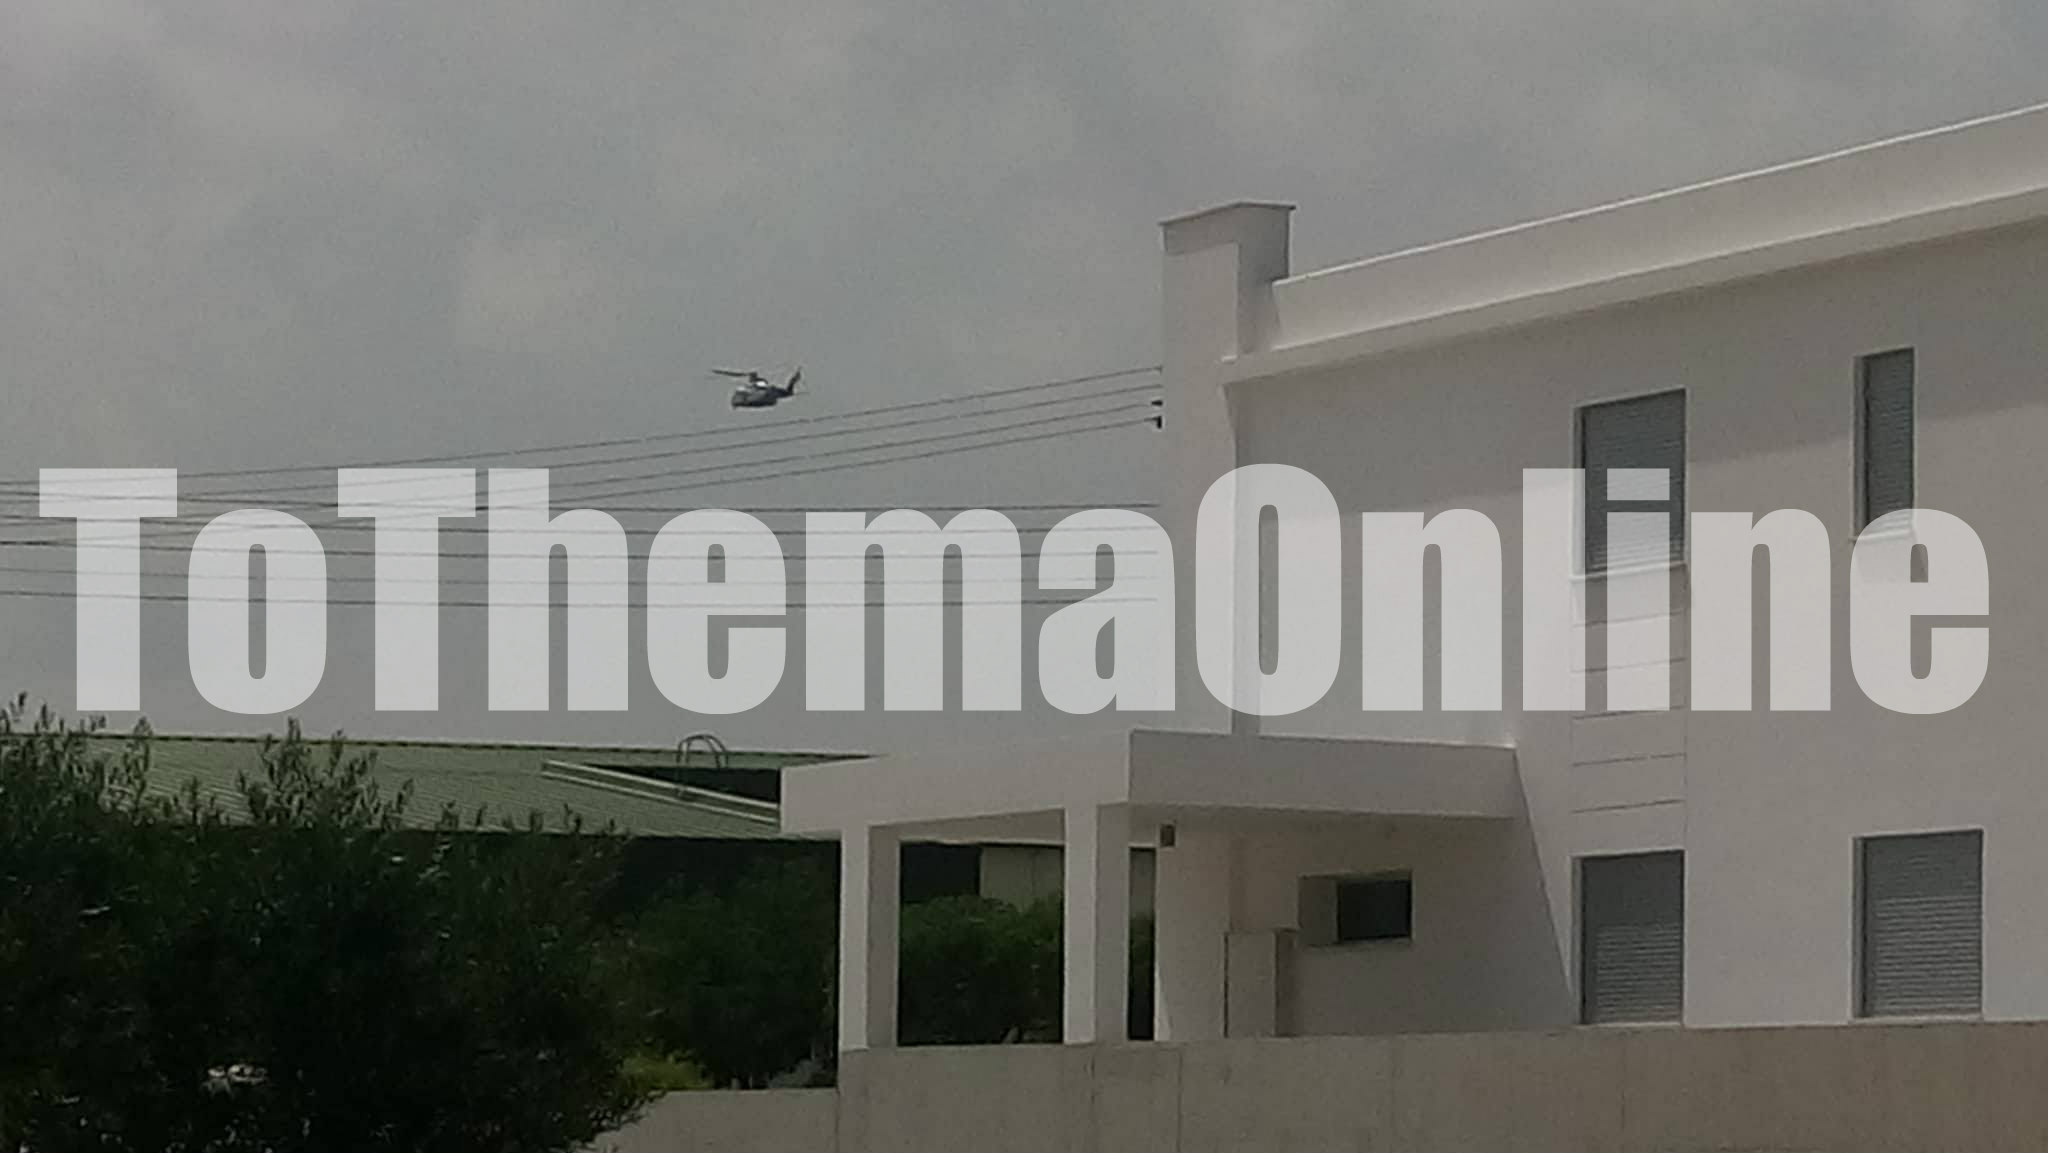 ΛΕΜΕΣΟΣ: Ανάστατοι οι κάτοικοι της περιοχής Ύψωνα – Ελικόπτερο υπερίπταται σε χαμηλό ύψος (ΒΙΝΤΕΟ)